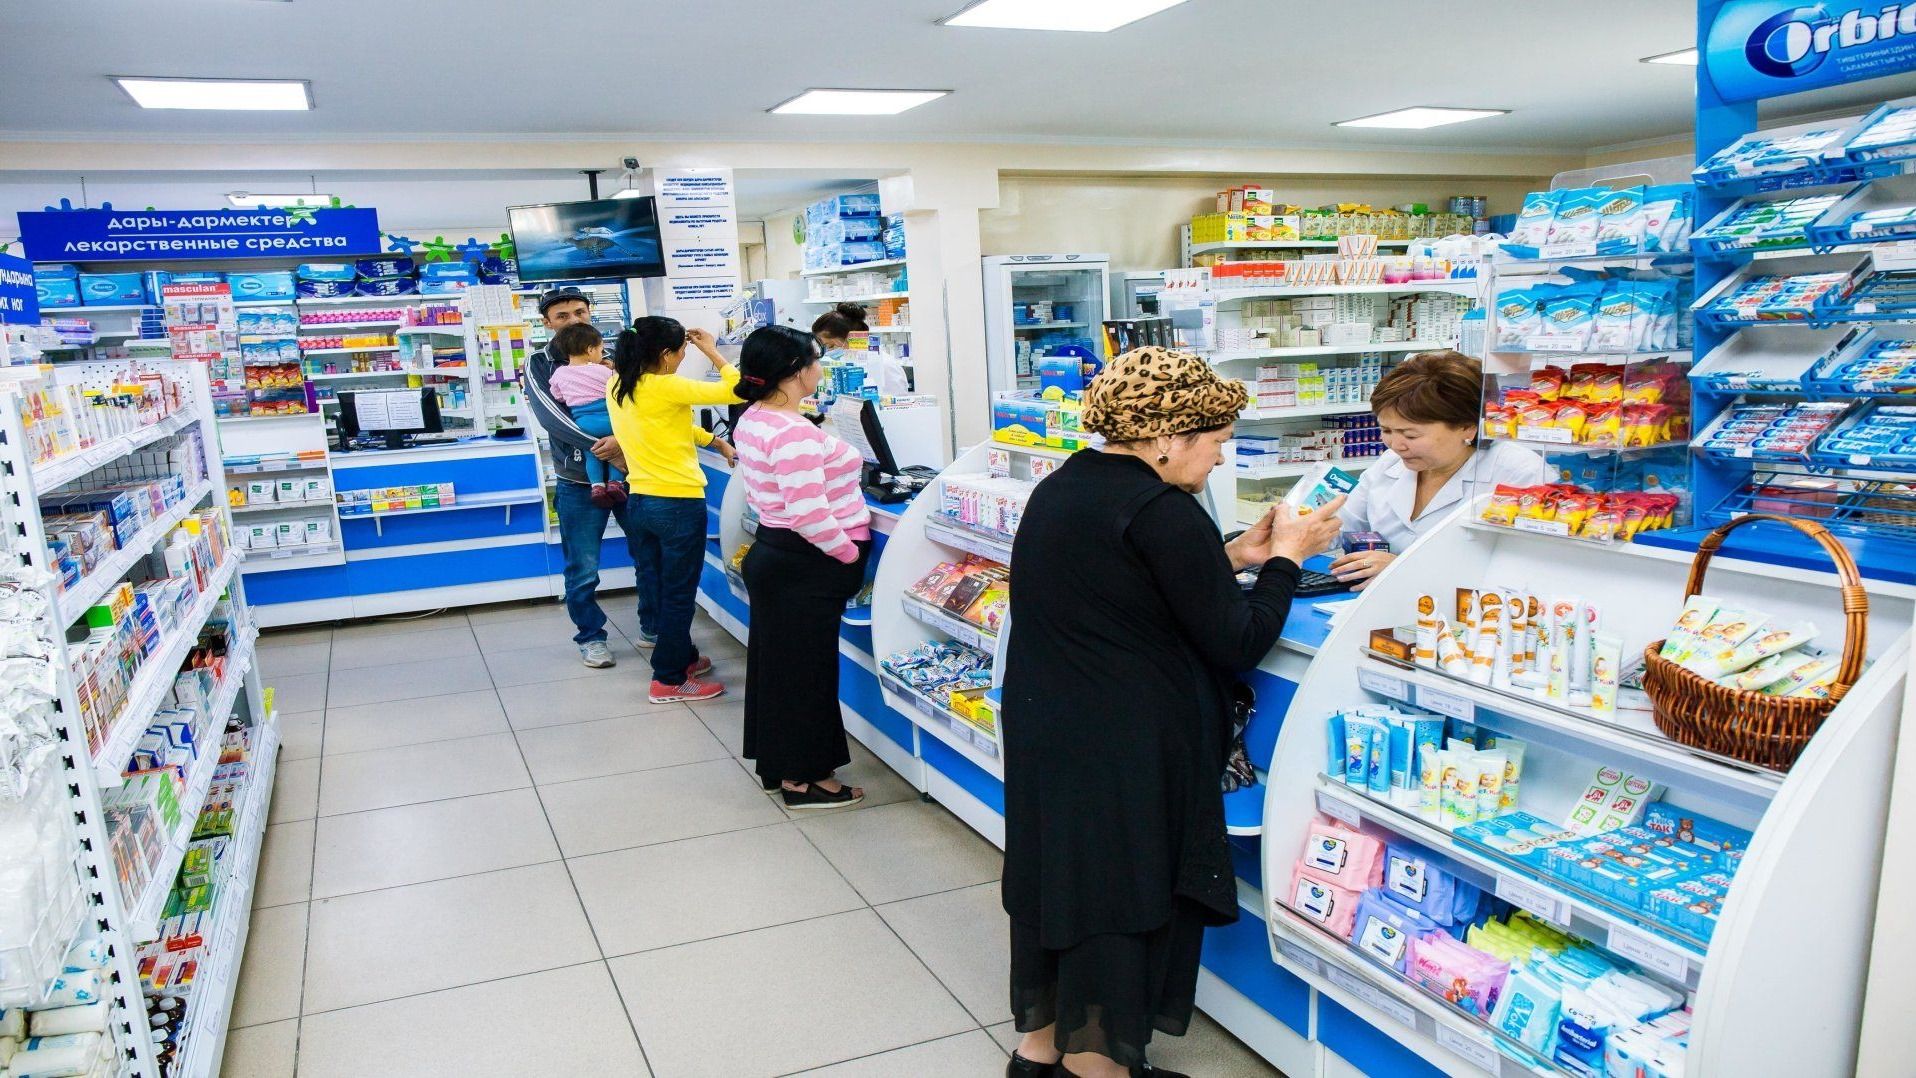 В Кыргызстане до конца года появится 35 государственных аптек - Алымкадыр Бейшеналиев